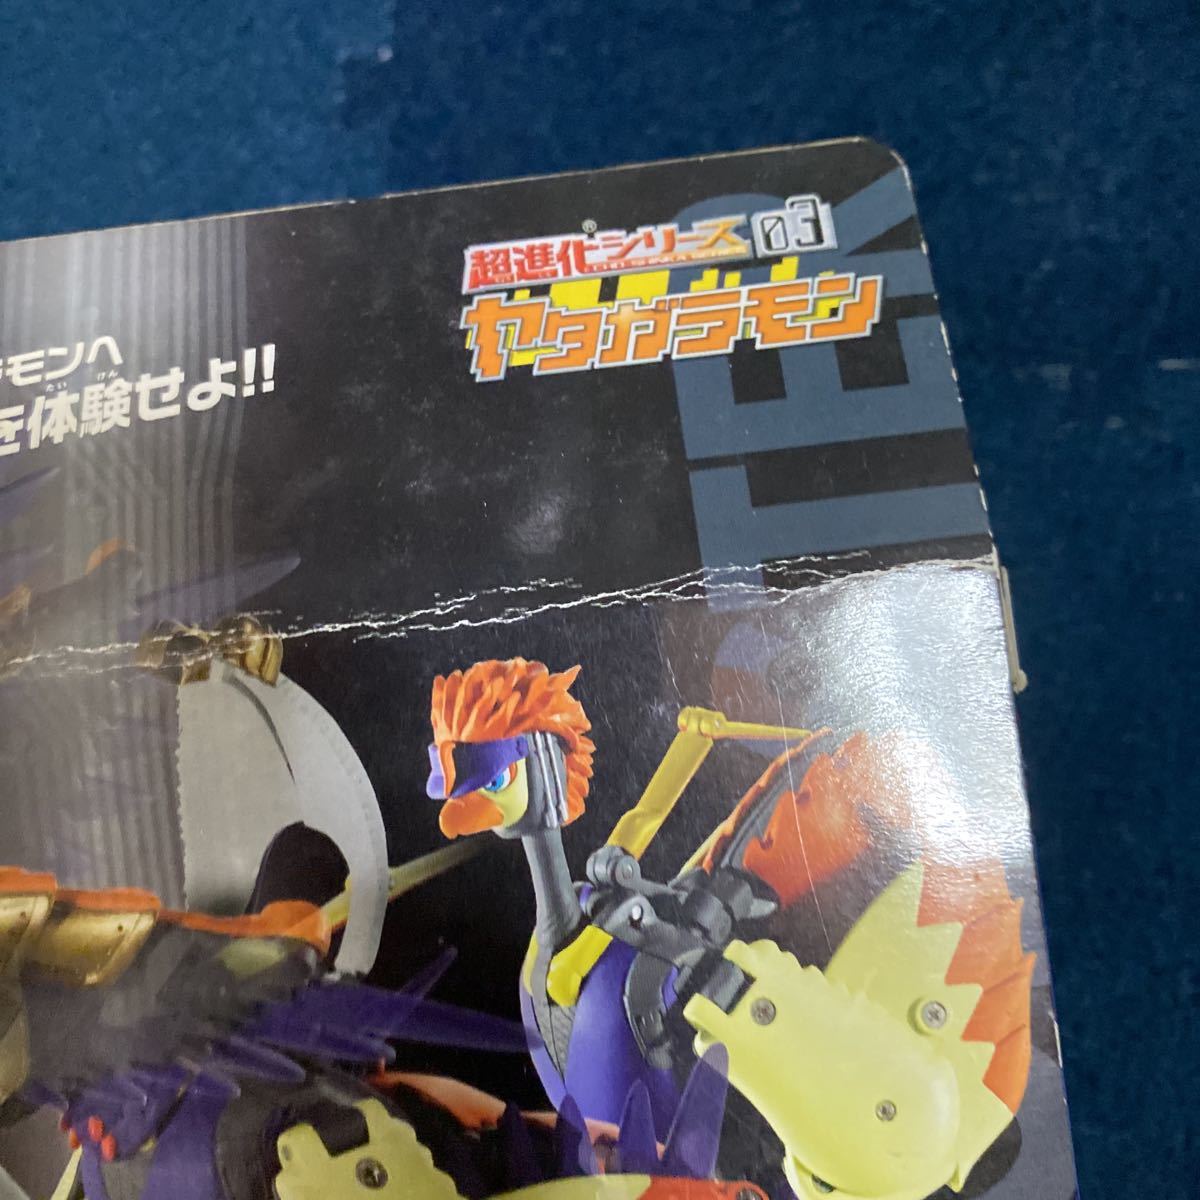  очень редкий [ нераспечатанный ] супер эволюция серии 03yatagalamon digimon Digimon Savers подлинная вещь подлинная вещь редкий редкость Vintage игрушка 